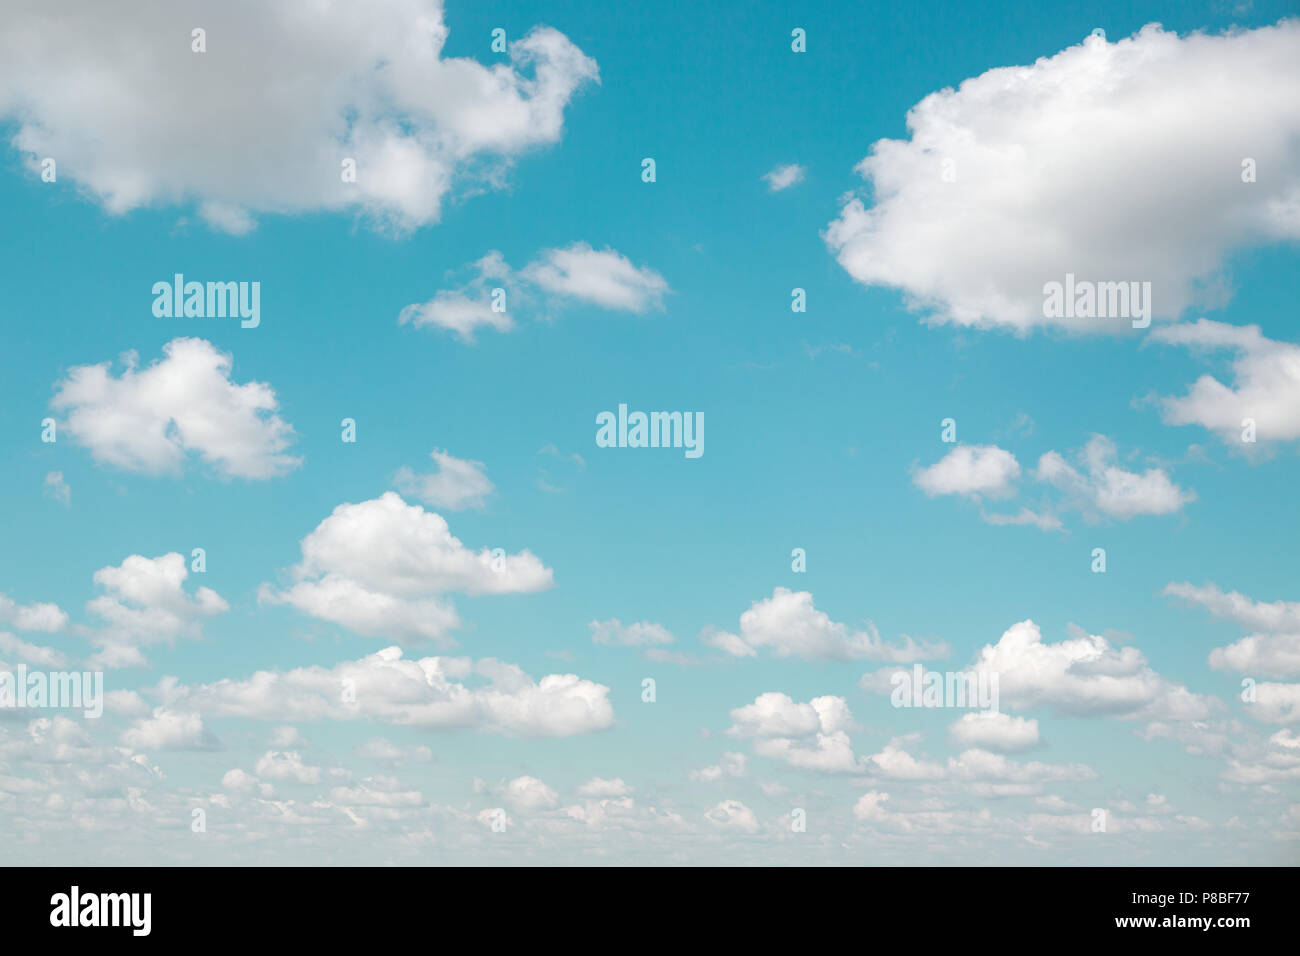 Hintergrund der flauschigen weissen Wolken und blauer Himmel mit Vintage Filter. Gradient celestial Azure cloudscape. Gutes Wetter. Stockfoto